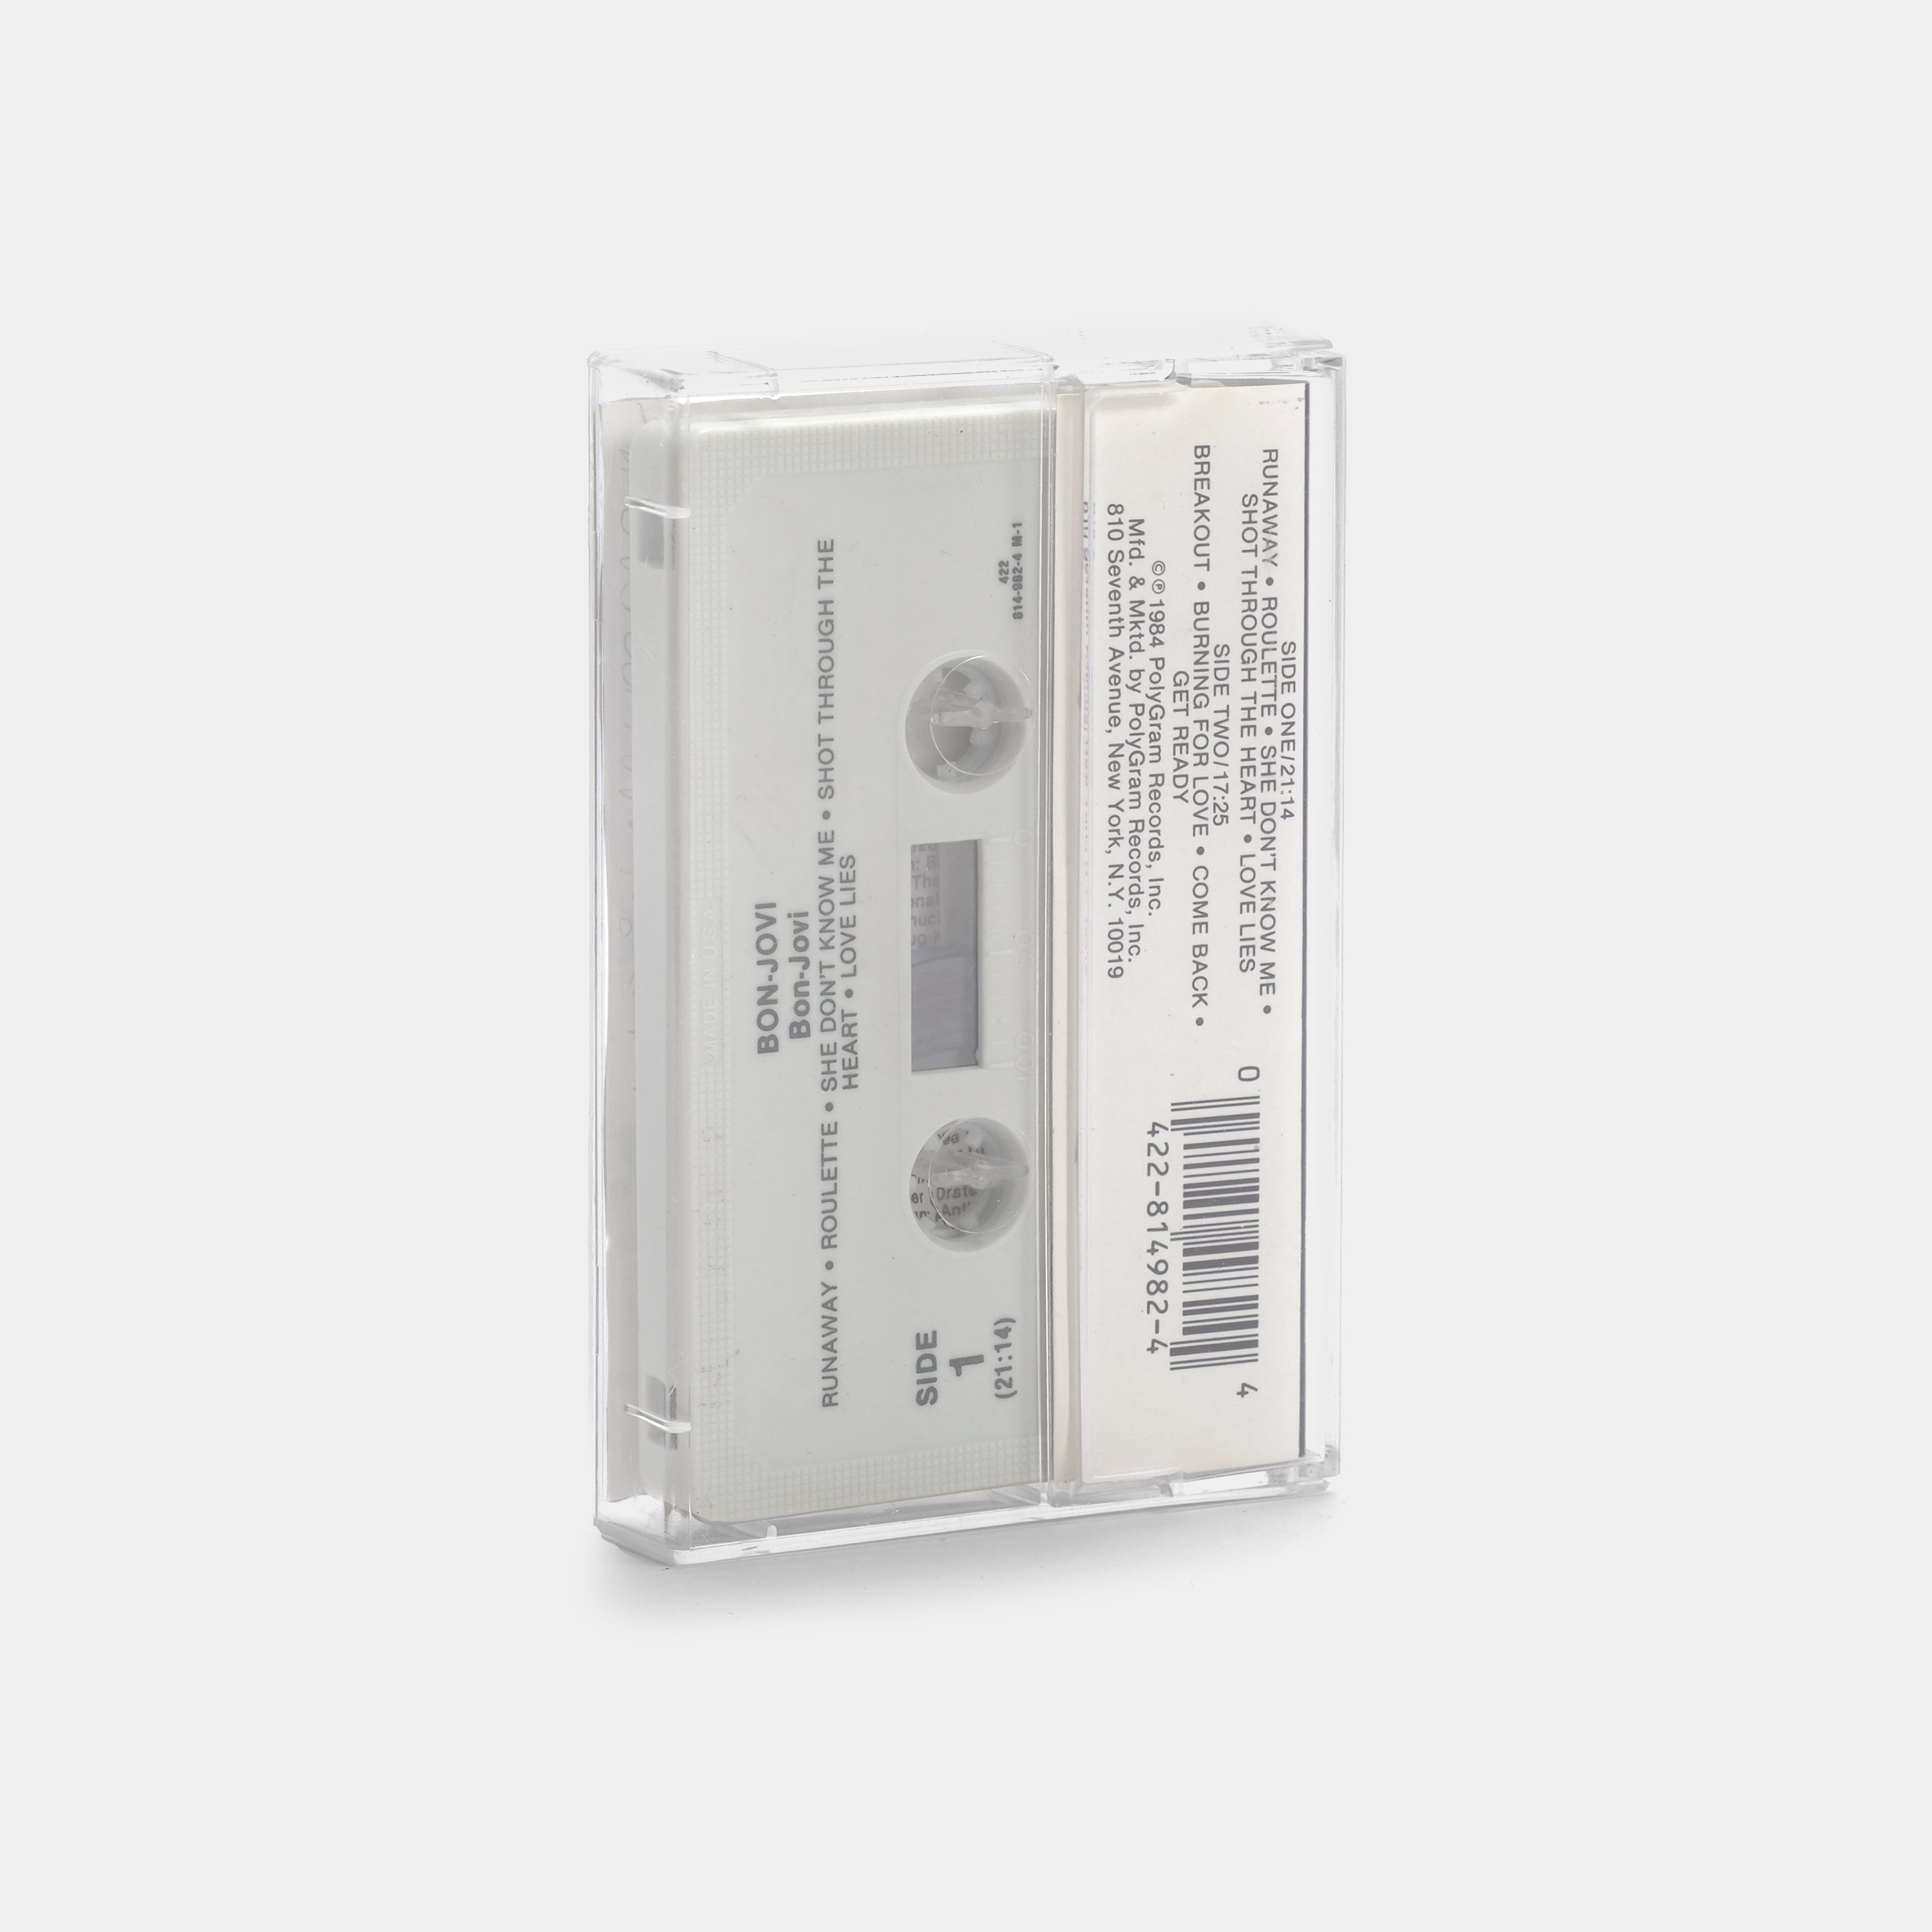 Bon Jovi - Bon Jovi Cassette Tape